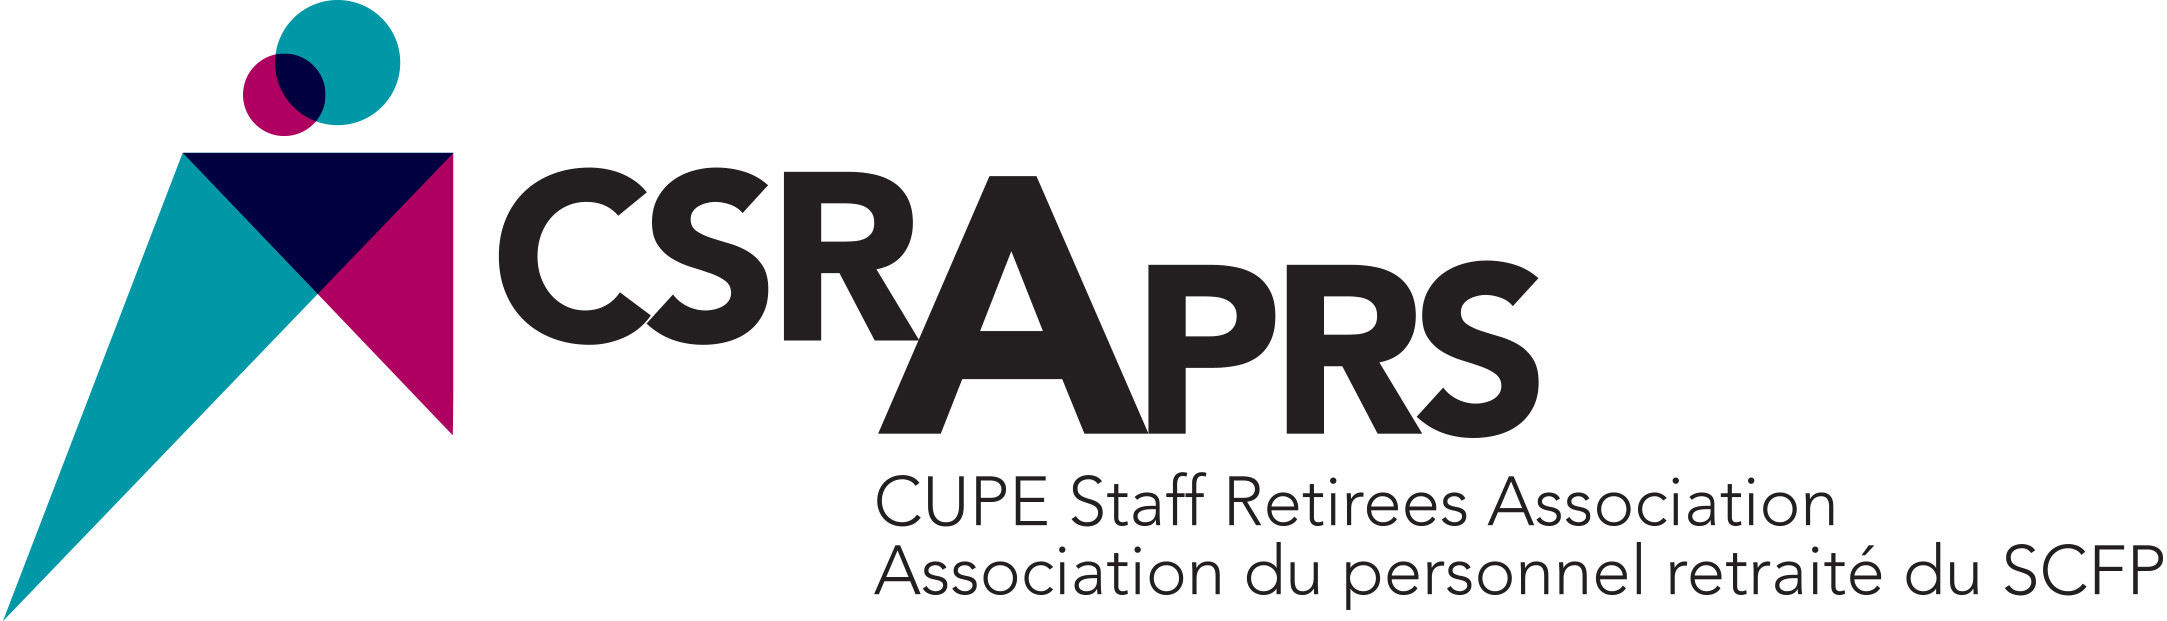 Les répercussions des régimes provinciaux d’assurance maladie sur les garanties dont bénéficient les retraités du SCFP à partir de l’âge de 65 ans